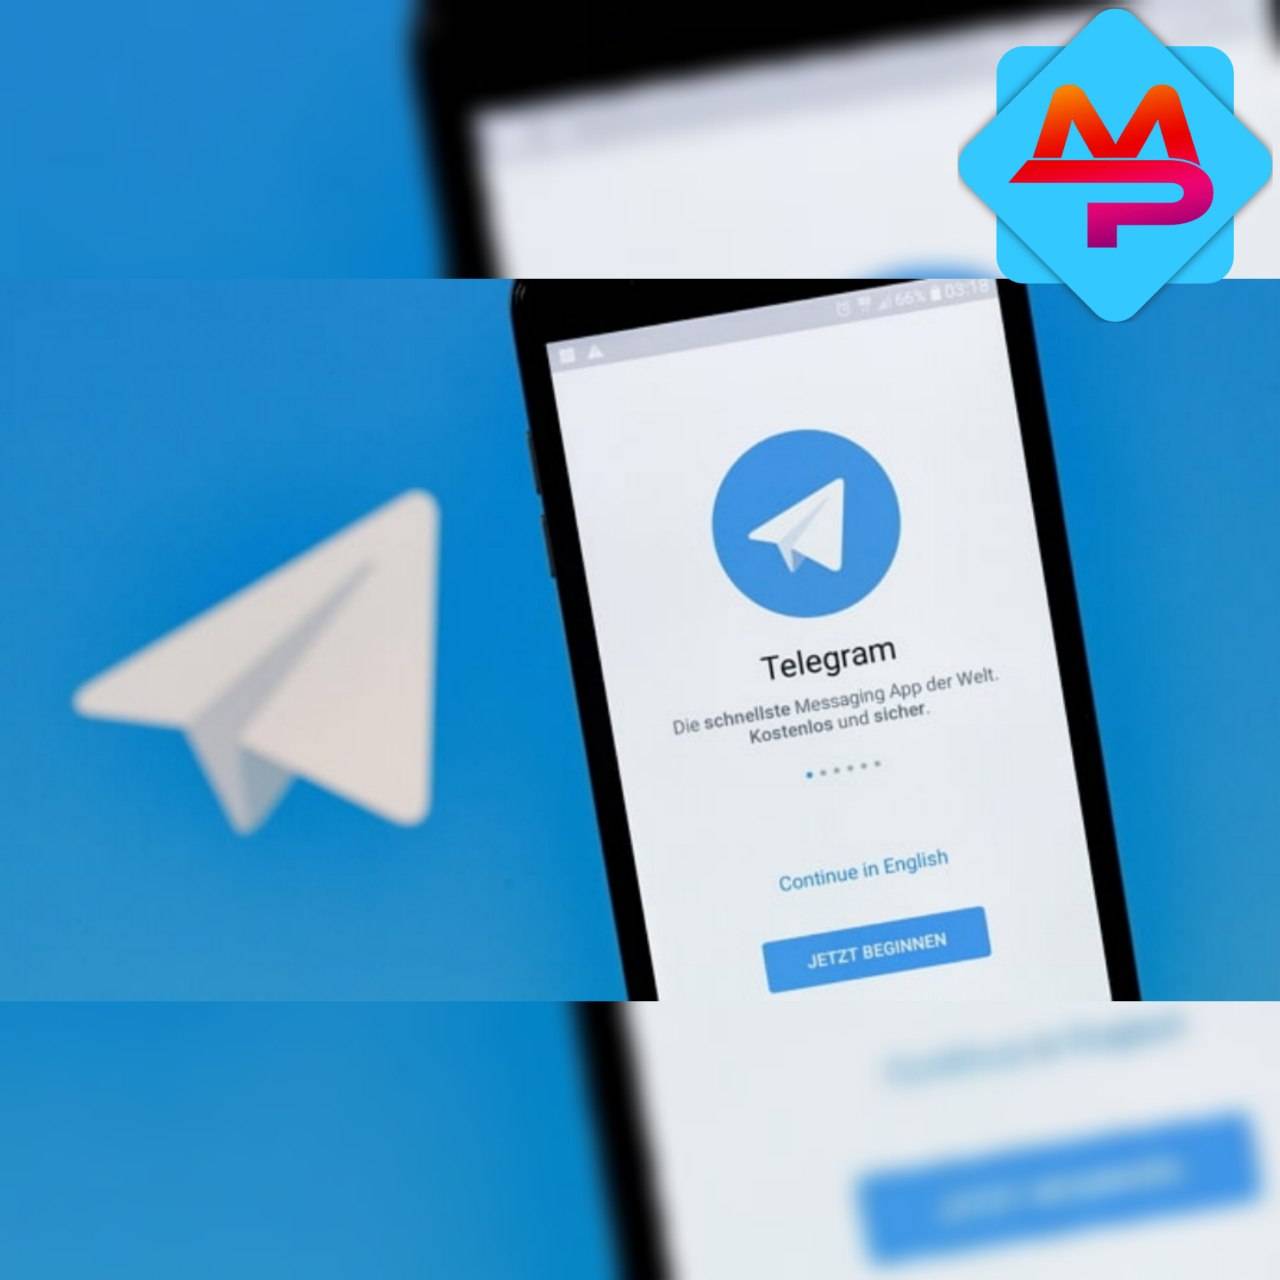 روش جذب ممبر تلگرام.png - جدید ترین روش های جذب ممبر تلگرام که نمی خواهند شما بدانید !